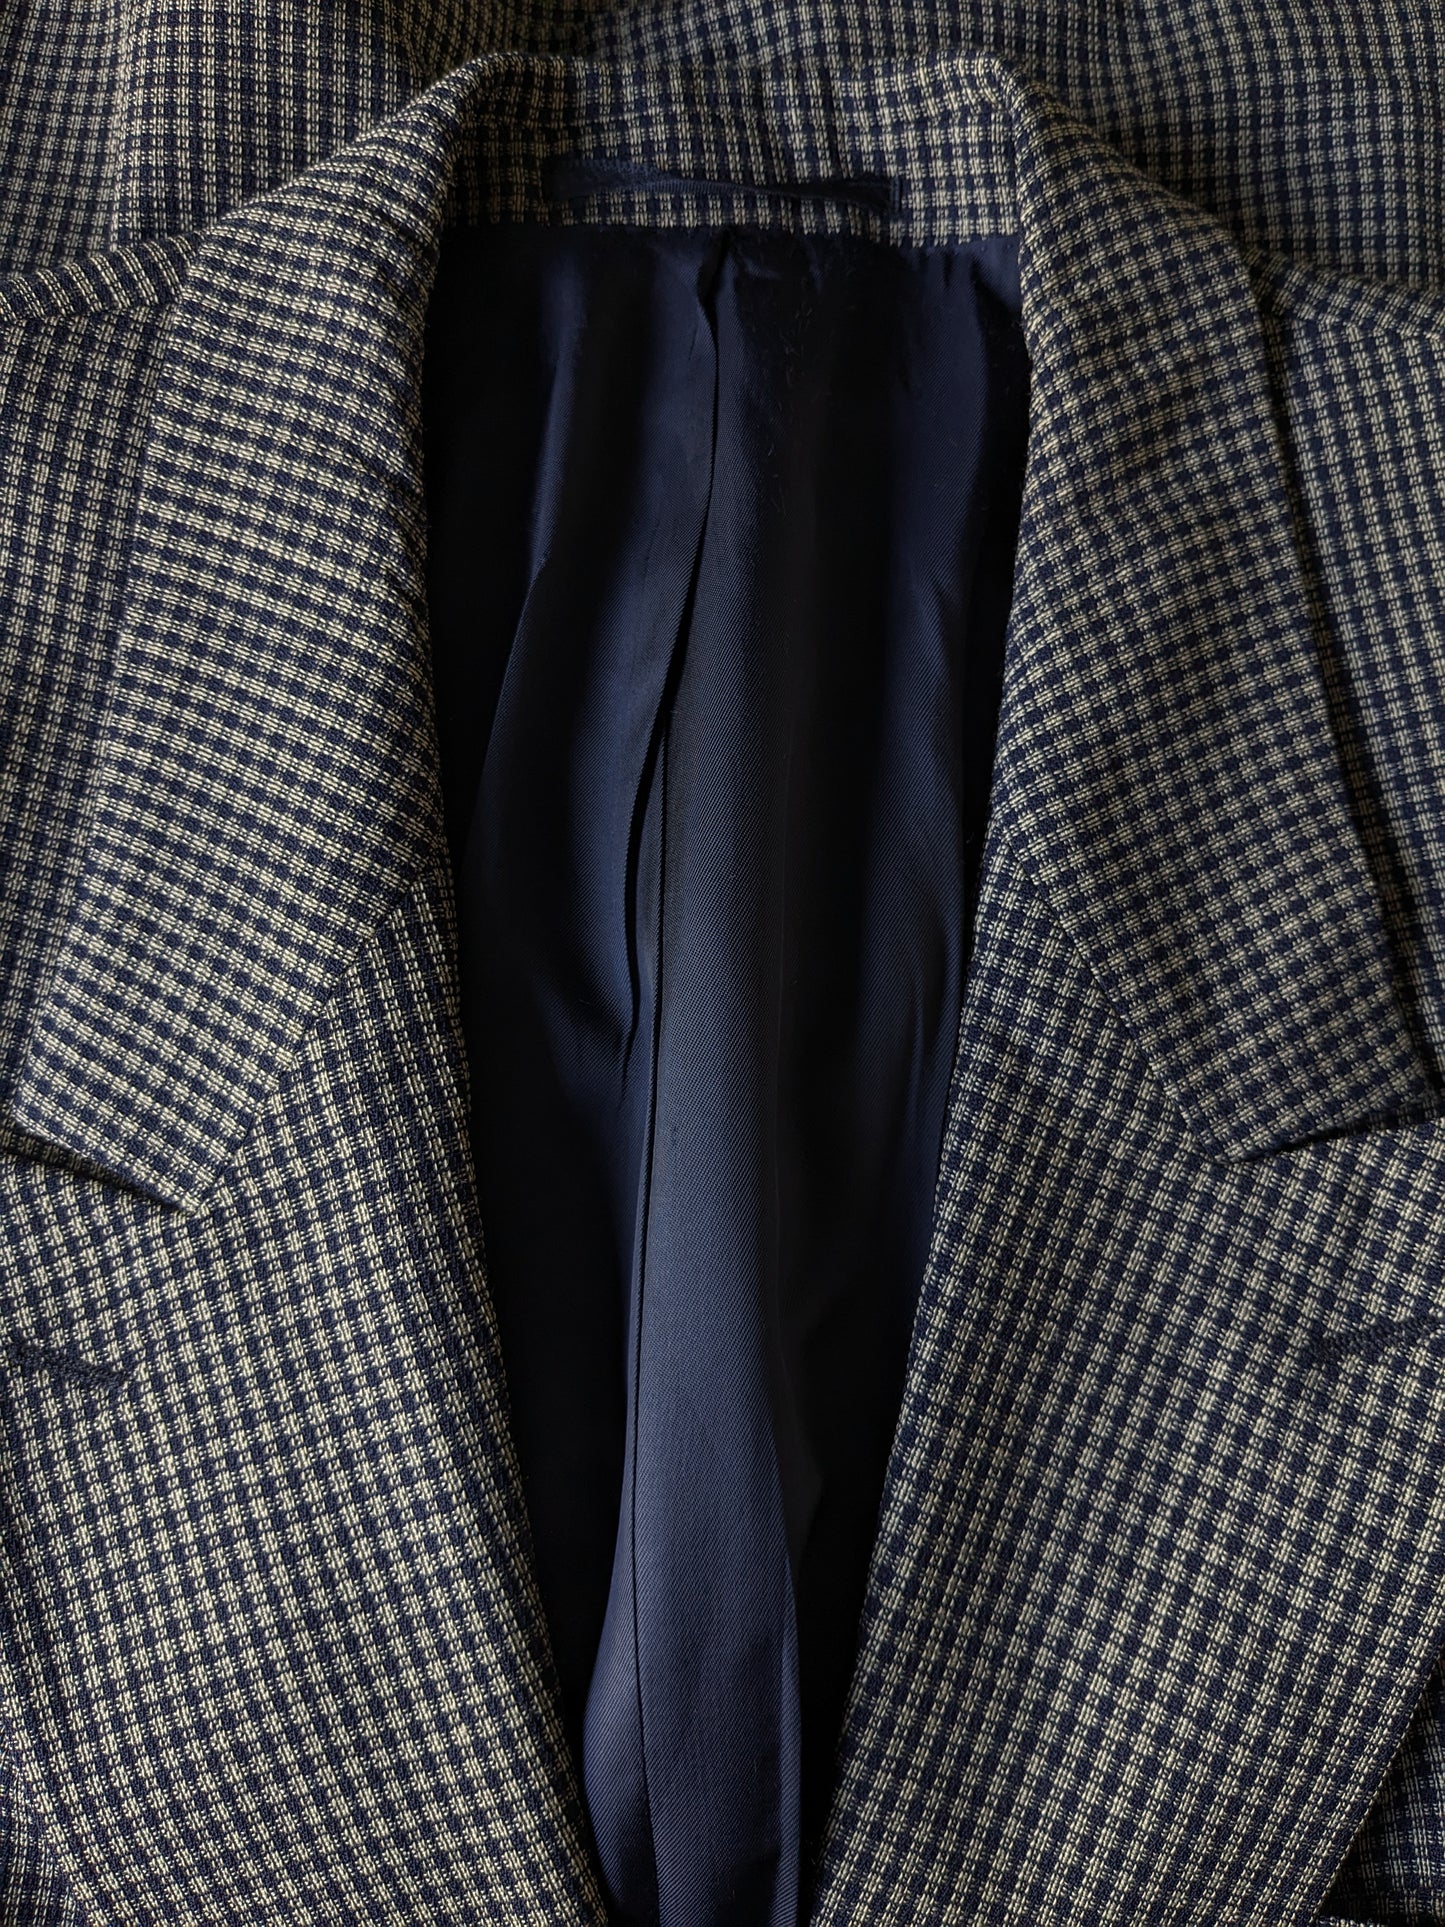 Van Gils Giacca di lana a doppio petto vintage con inverni punti. Grigio blu controllato. Taglia 54 / L.